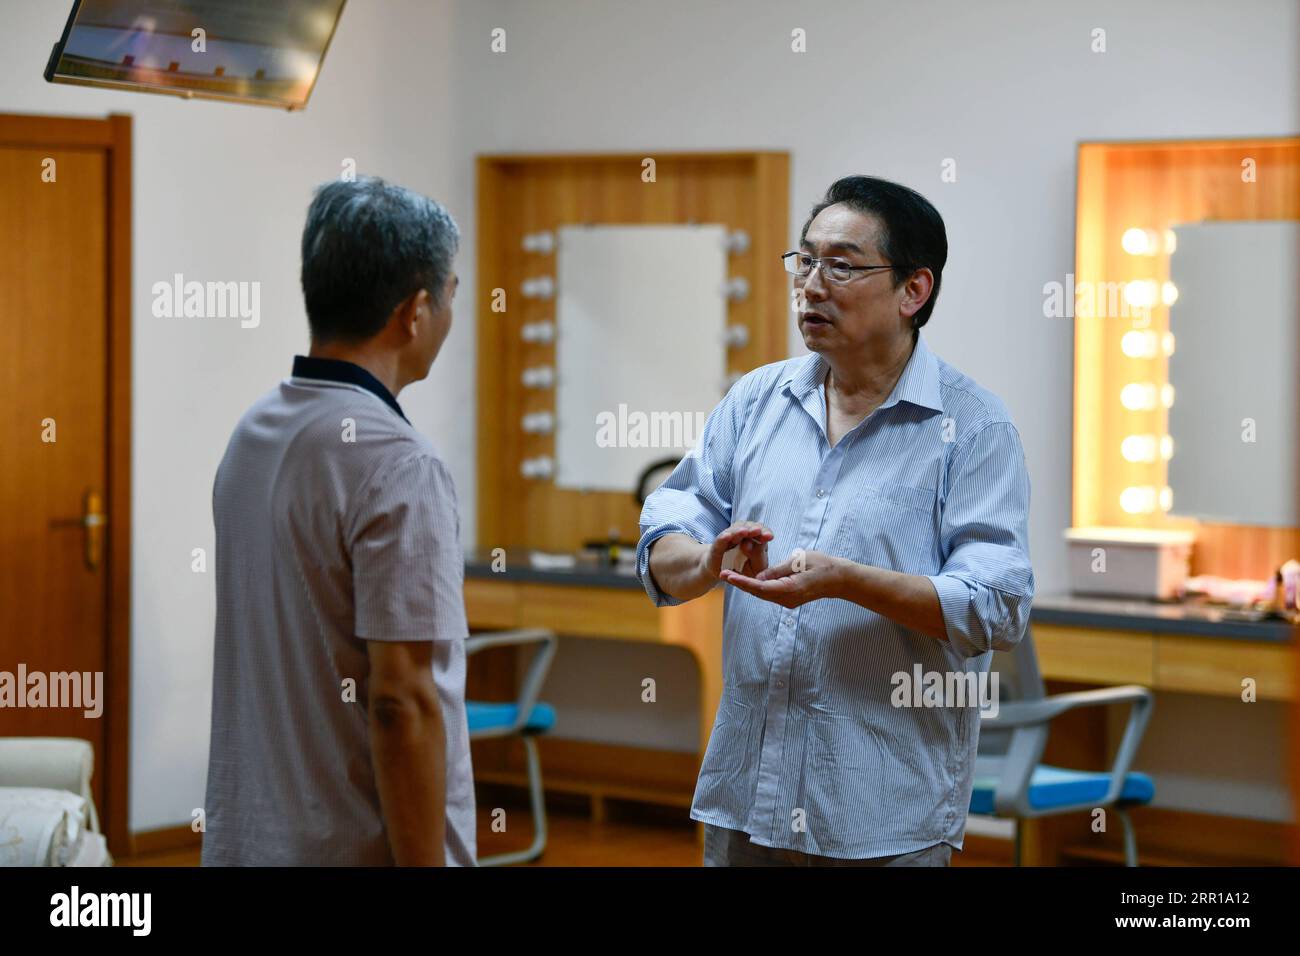 200910 -- TIANJIN, 10 settembre 2020 -- Wang Jishi R discute le linee drammatiche con un membro dello staff in uno spogliatoio nel Tianjin Guanghua Theater, Tianjin, nella Cina settentrionale, 8 settembre 2020. Wang Jishi, 65 anni, è un attore nazionale di prima classe, che un tempo era il capo del Tianjin People's Art Theater. Quest'anno segna il 50° anno di recitazione drammatica per Wang. Nato da una famiglia ordinaria a Tianjin, Wang è stato scelto da alcuni insegnanti del Tianjin People's Art Theater durante uno spettacolo scolastico, all'età di 15 anni. Ha poi iniziato la sua carriera drammatica. Ripensando ai suoi 50 anni di carriera drammatica, Foto Stock